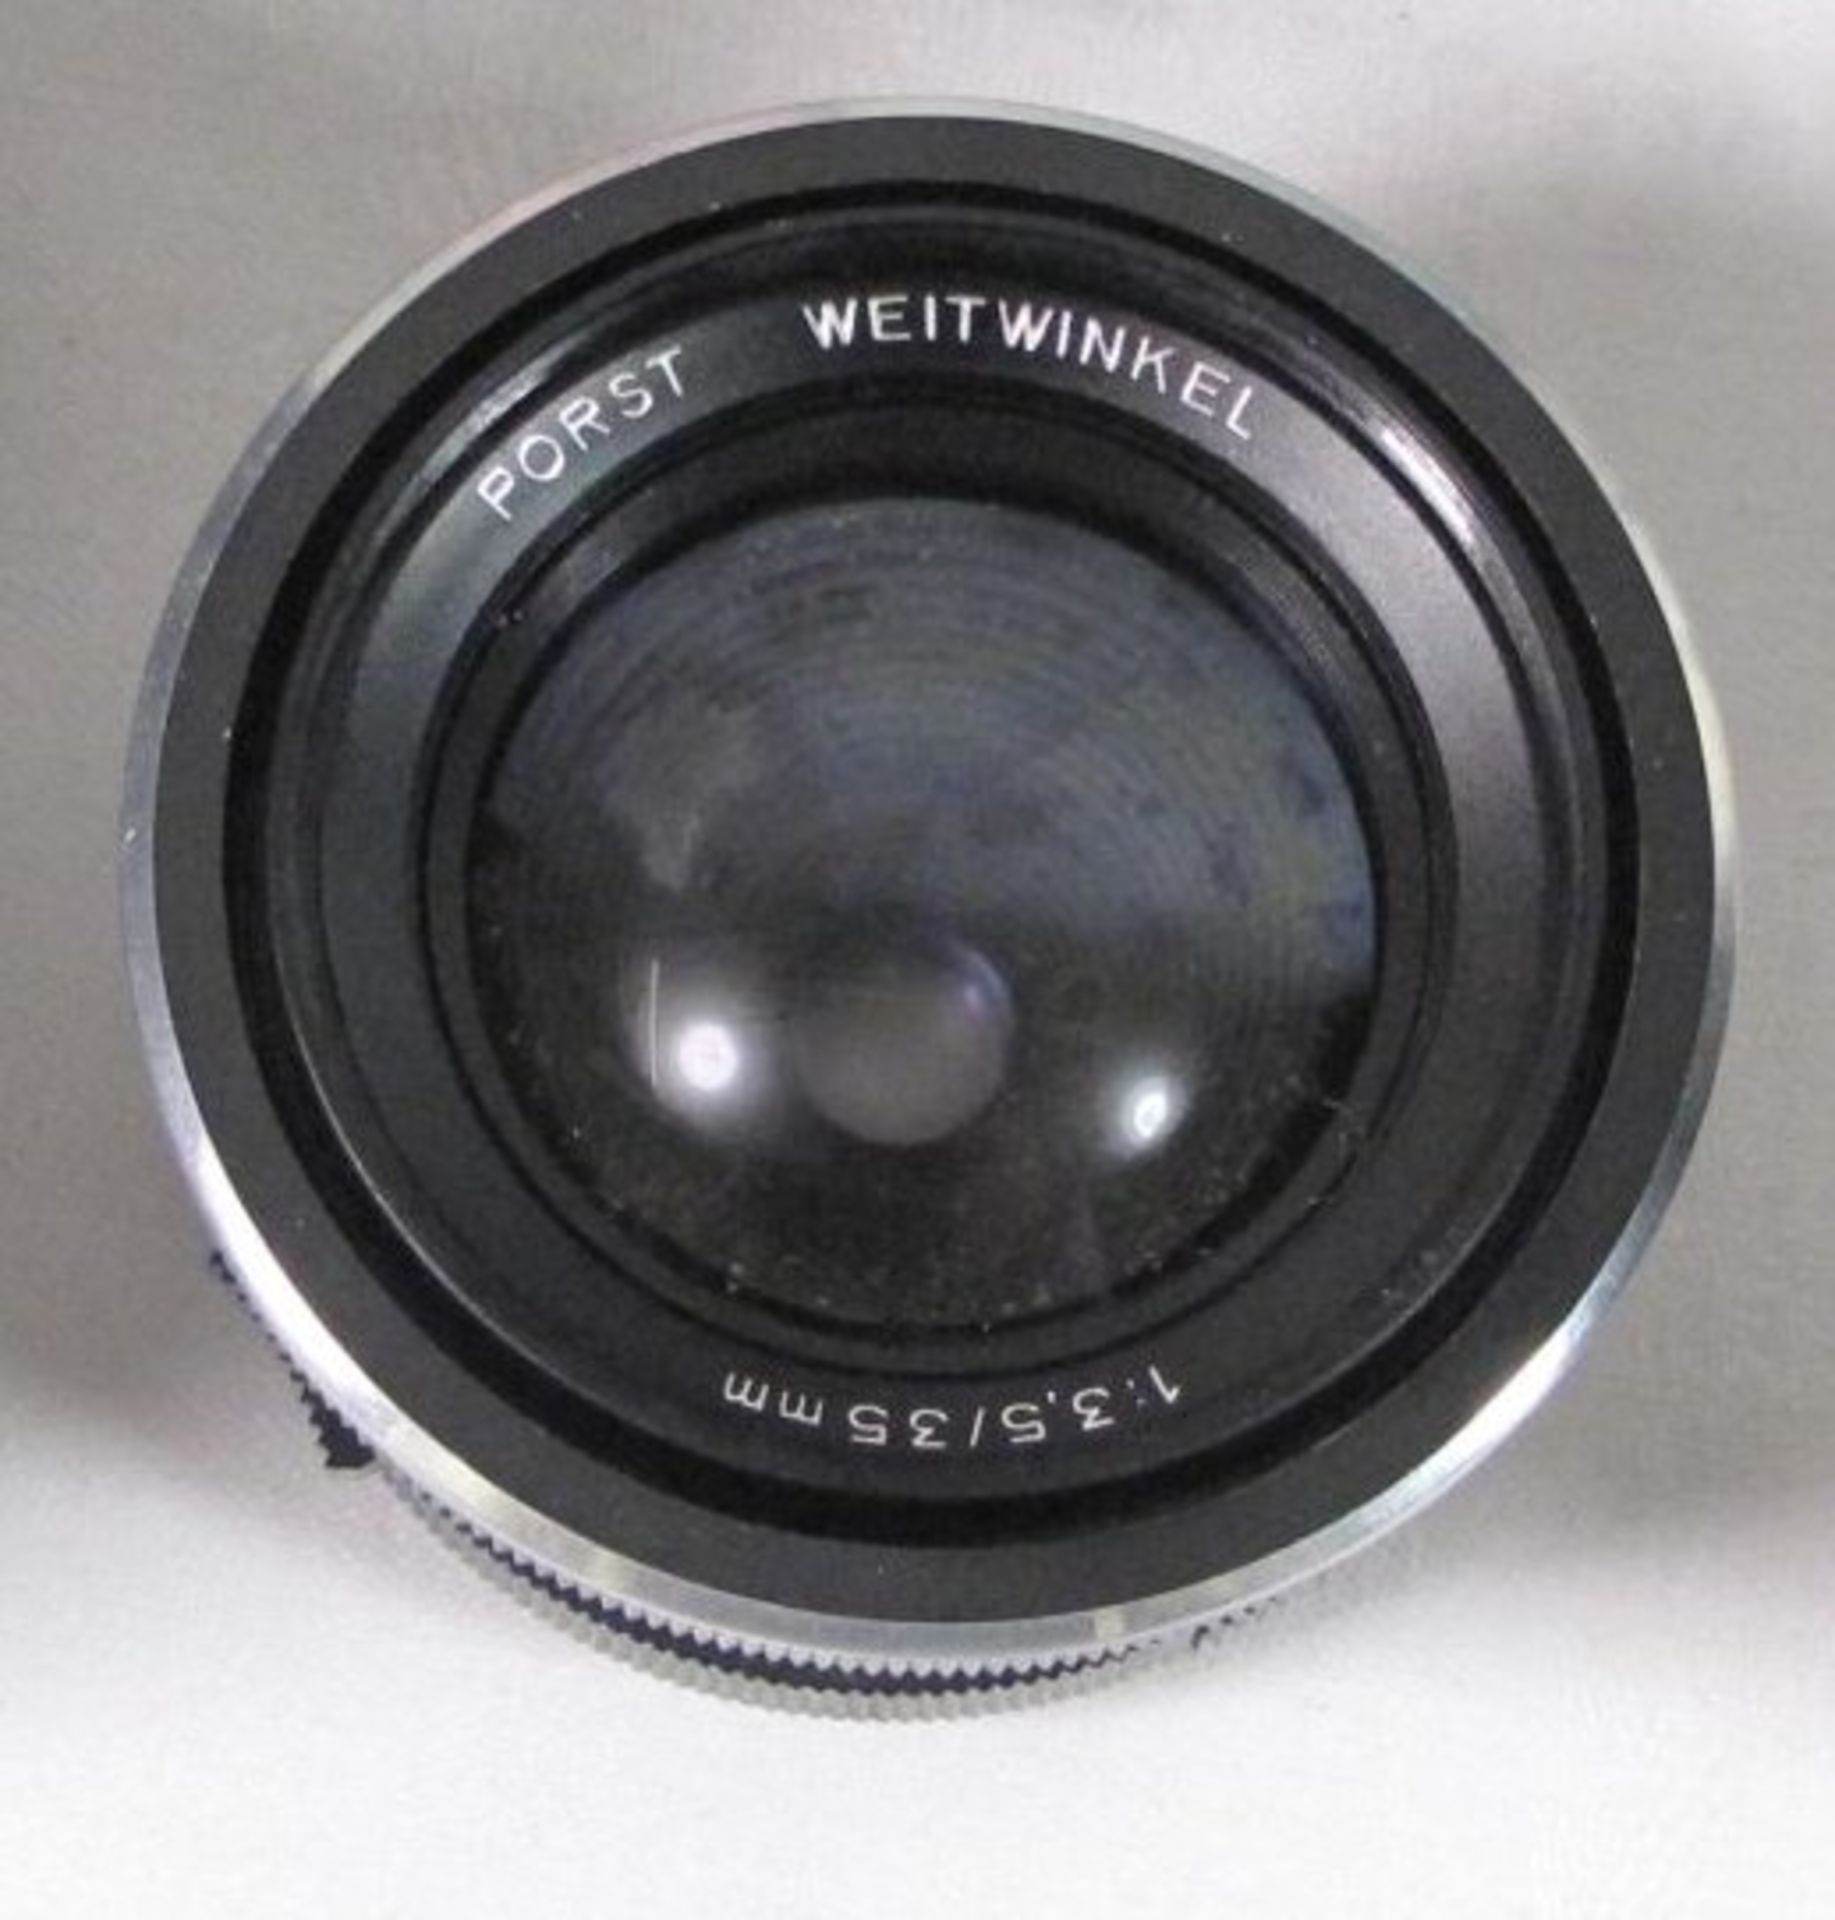 Fotoapparat "Porst Reflex CX 4" anbei 2 Objektive und Blitz, in Tasche. Funktion nicht geprüf - Bild 3 aus 3